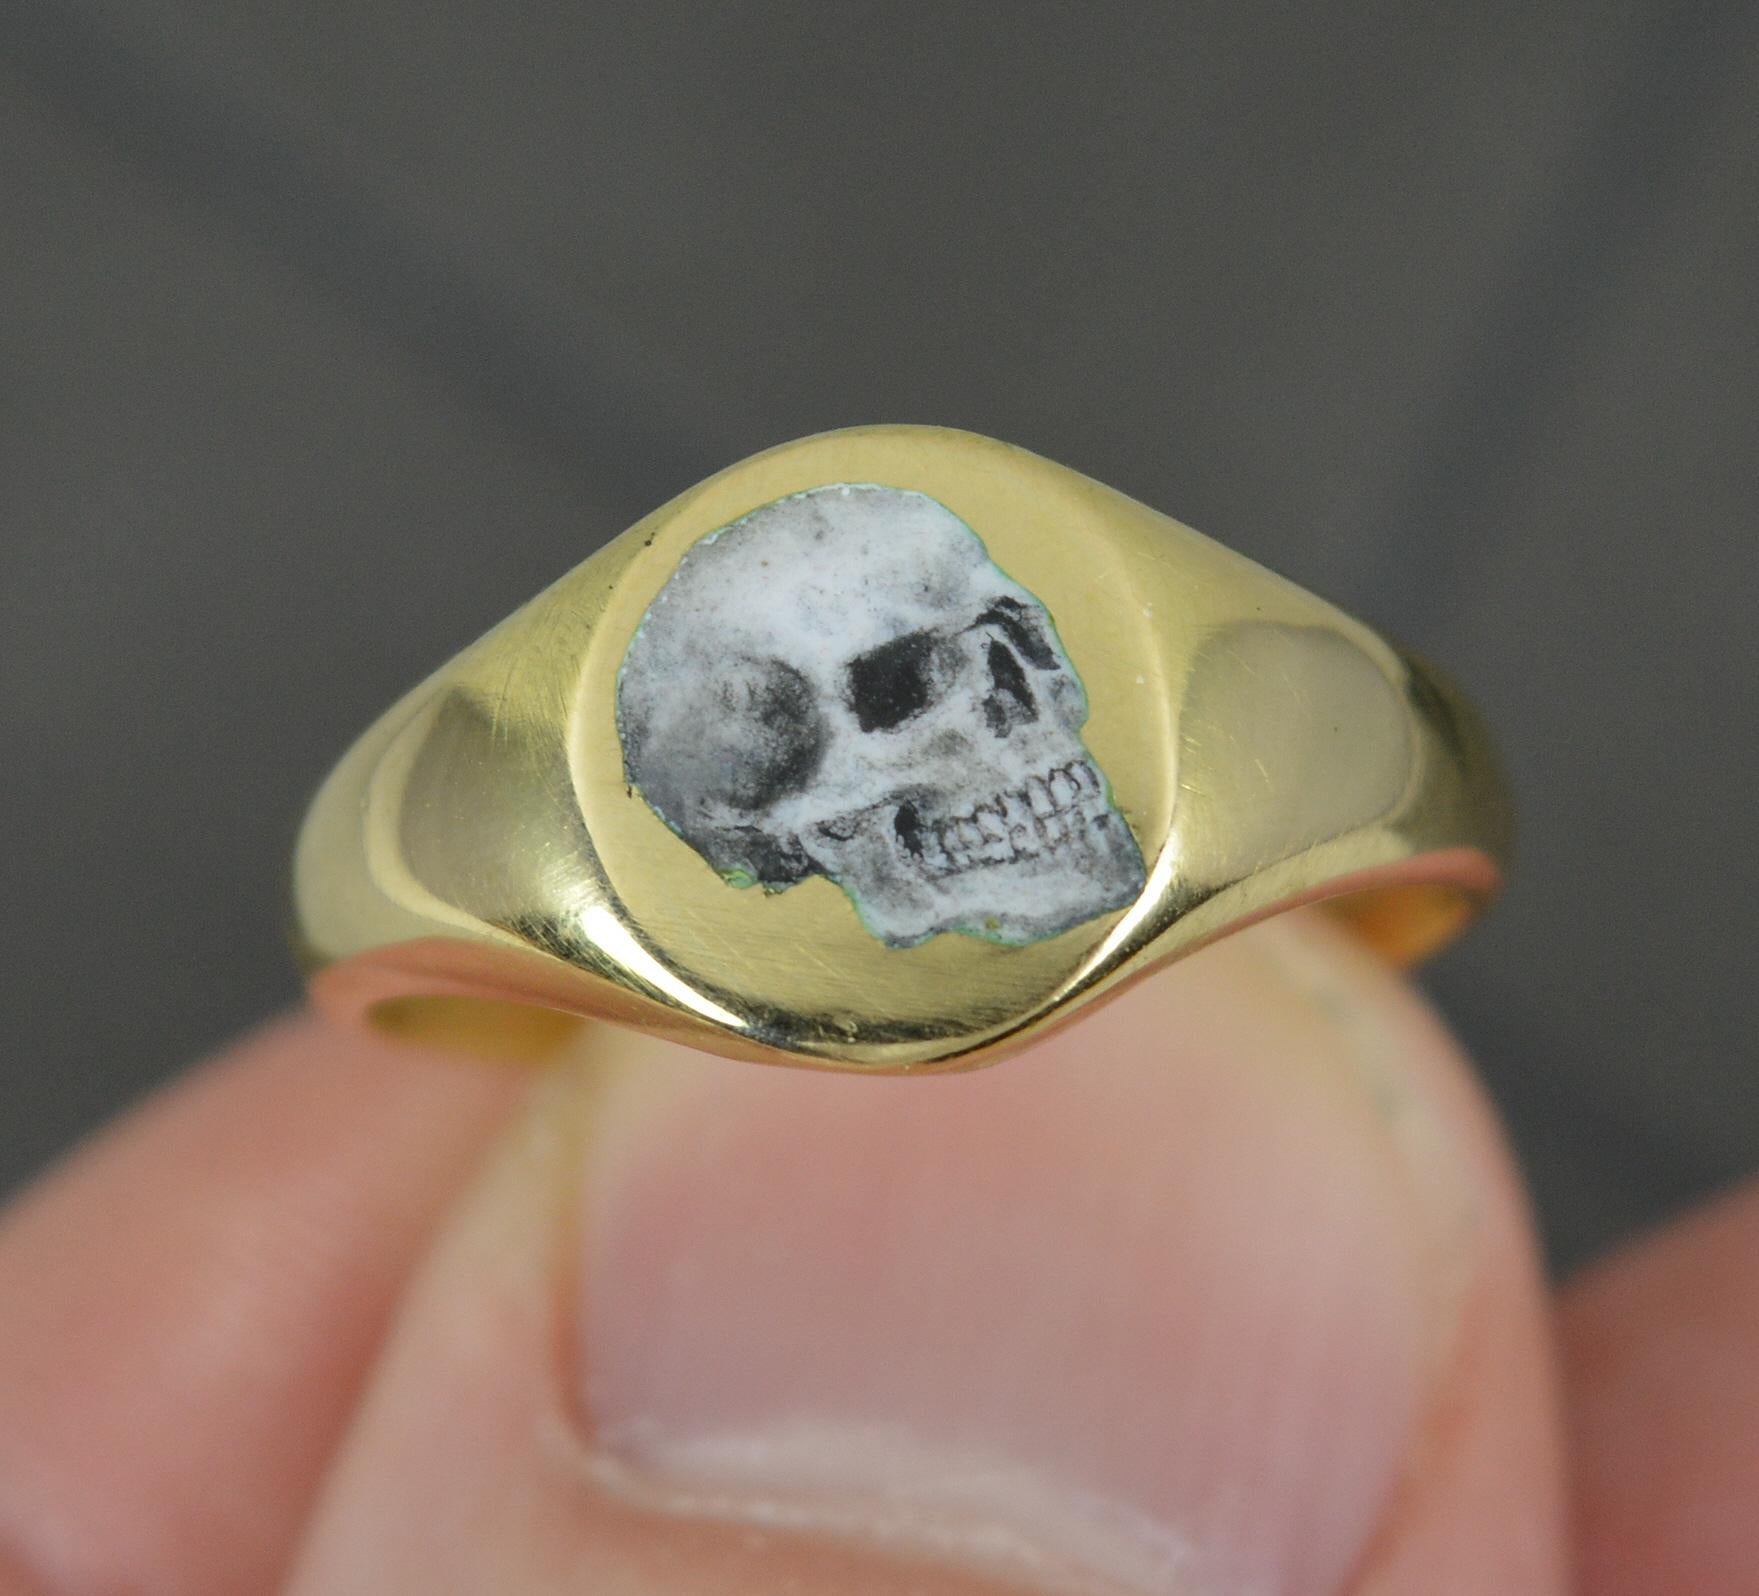 Impressive 18 Carat Gold and Enamel Skull Signet Ring For Sale 1